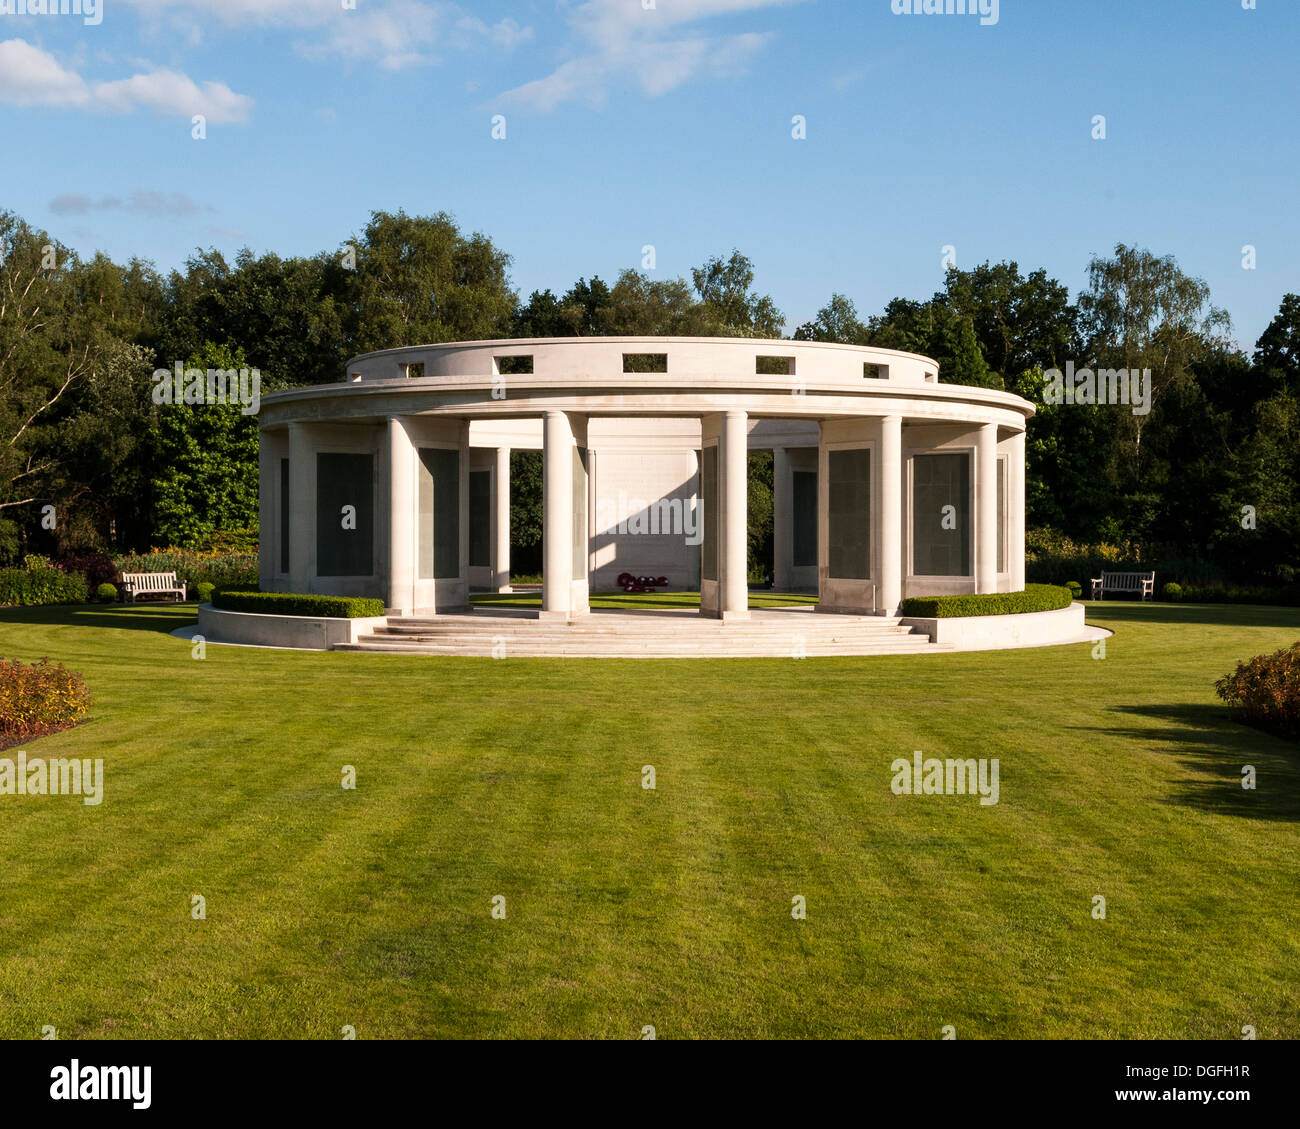 Cimetière militaire de Brookwood et mémoriaux, Brookwood, Royaume-Uni. Architecte : inconnu, 2013. Memorial. Banque D'Images